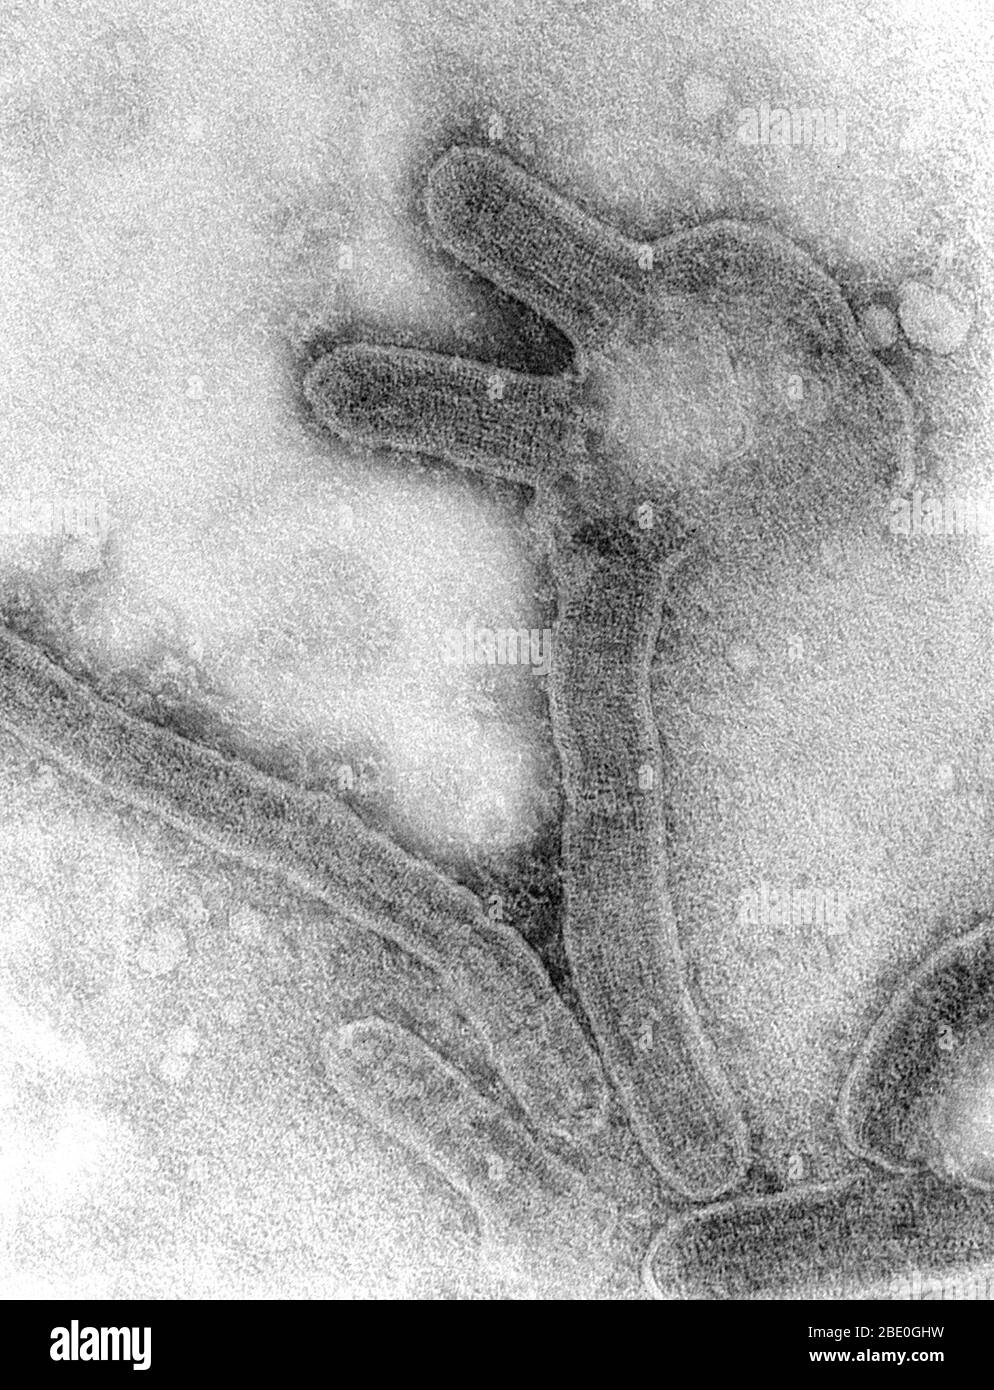 Dieser negativ gefärbte Transmissionselektronenmikrograph (TEM) zeigt eine Reihe von Marburger Virionen, die in einer Umgebung von Gewebekulturzellen gewachsen waren. Marburger Hämorrhagisches Fieber ist eine seltene, schwere Art von hämorrhagischem Fieber, das sowohl Menschen als auch nicht-menschliche Primaten betrifft. Durch ein genetisch einzigartiges zoonotisches (d.h. tierisches) RNA-Virus der Filovirus-Familie verursacht, führte seine Anerkennung zur Entstehung dieser Virusfamilie. Die vier Arten des Ebola-Virus sind die einzigen anderen bekannten Mitglieder der Familie des Filovirus. Nach einer Inkubationszeit von 5-10 Tagen tritt die Krankheit auf Stockfoto